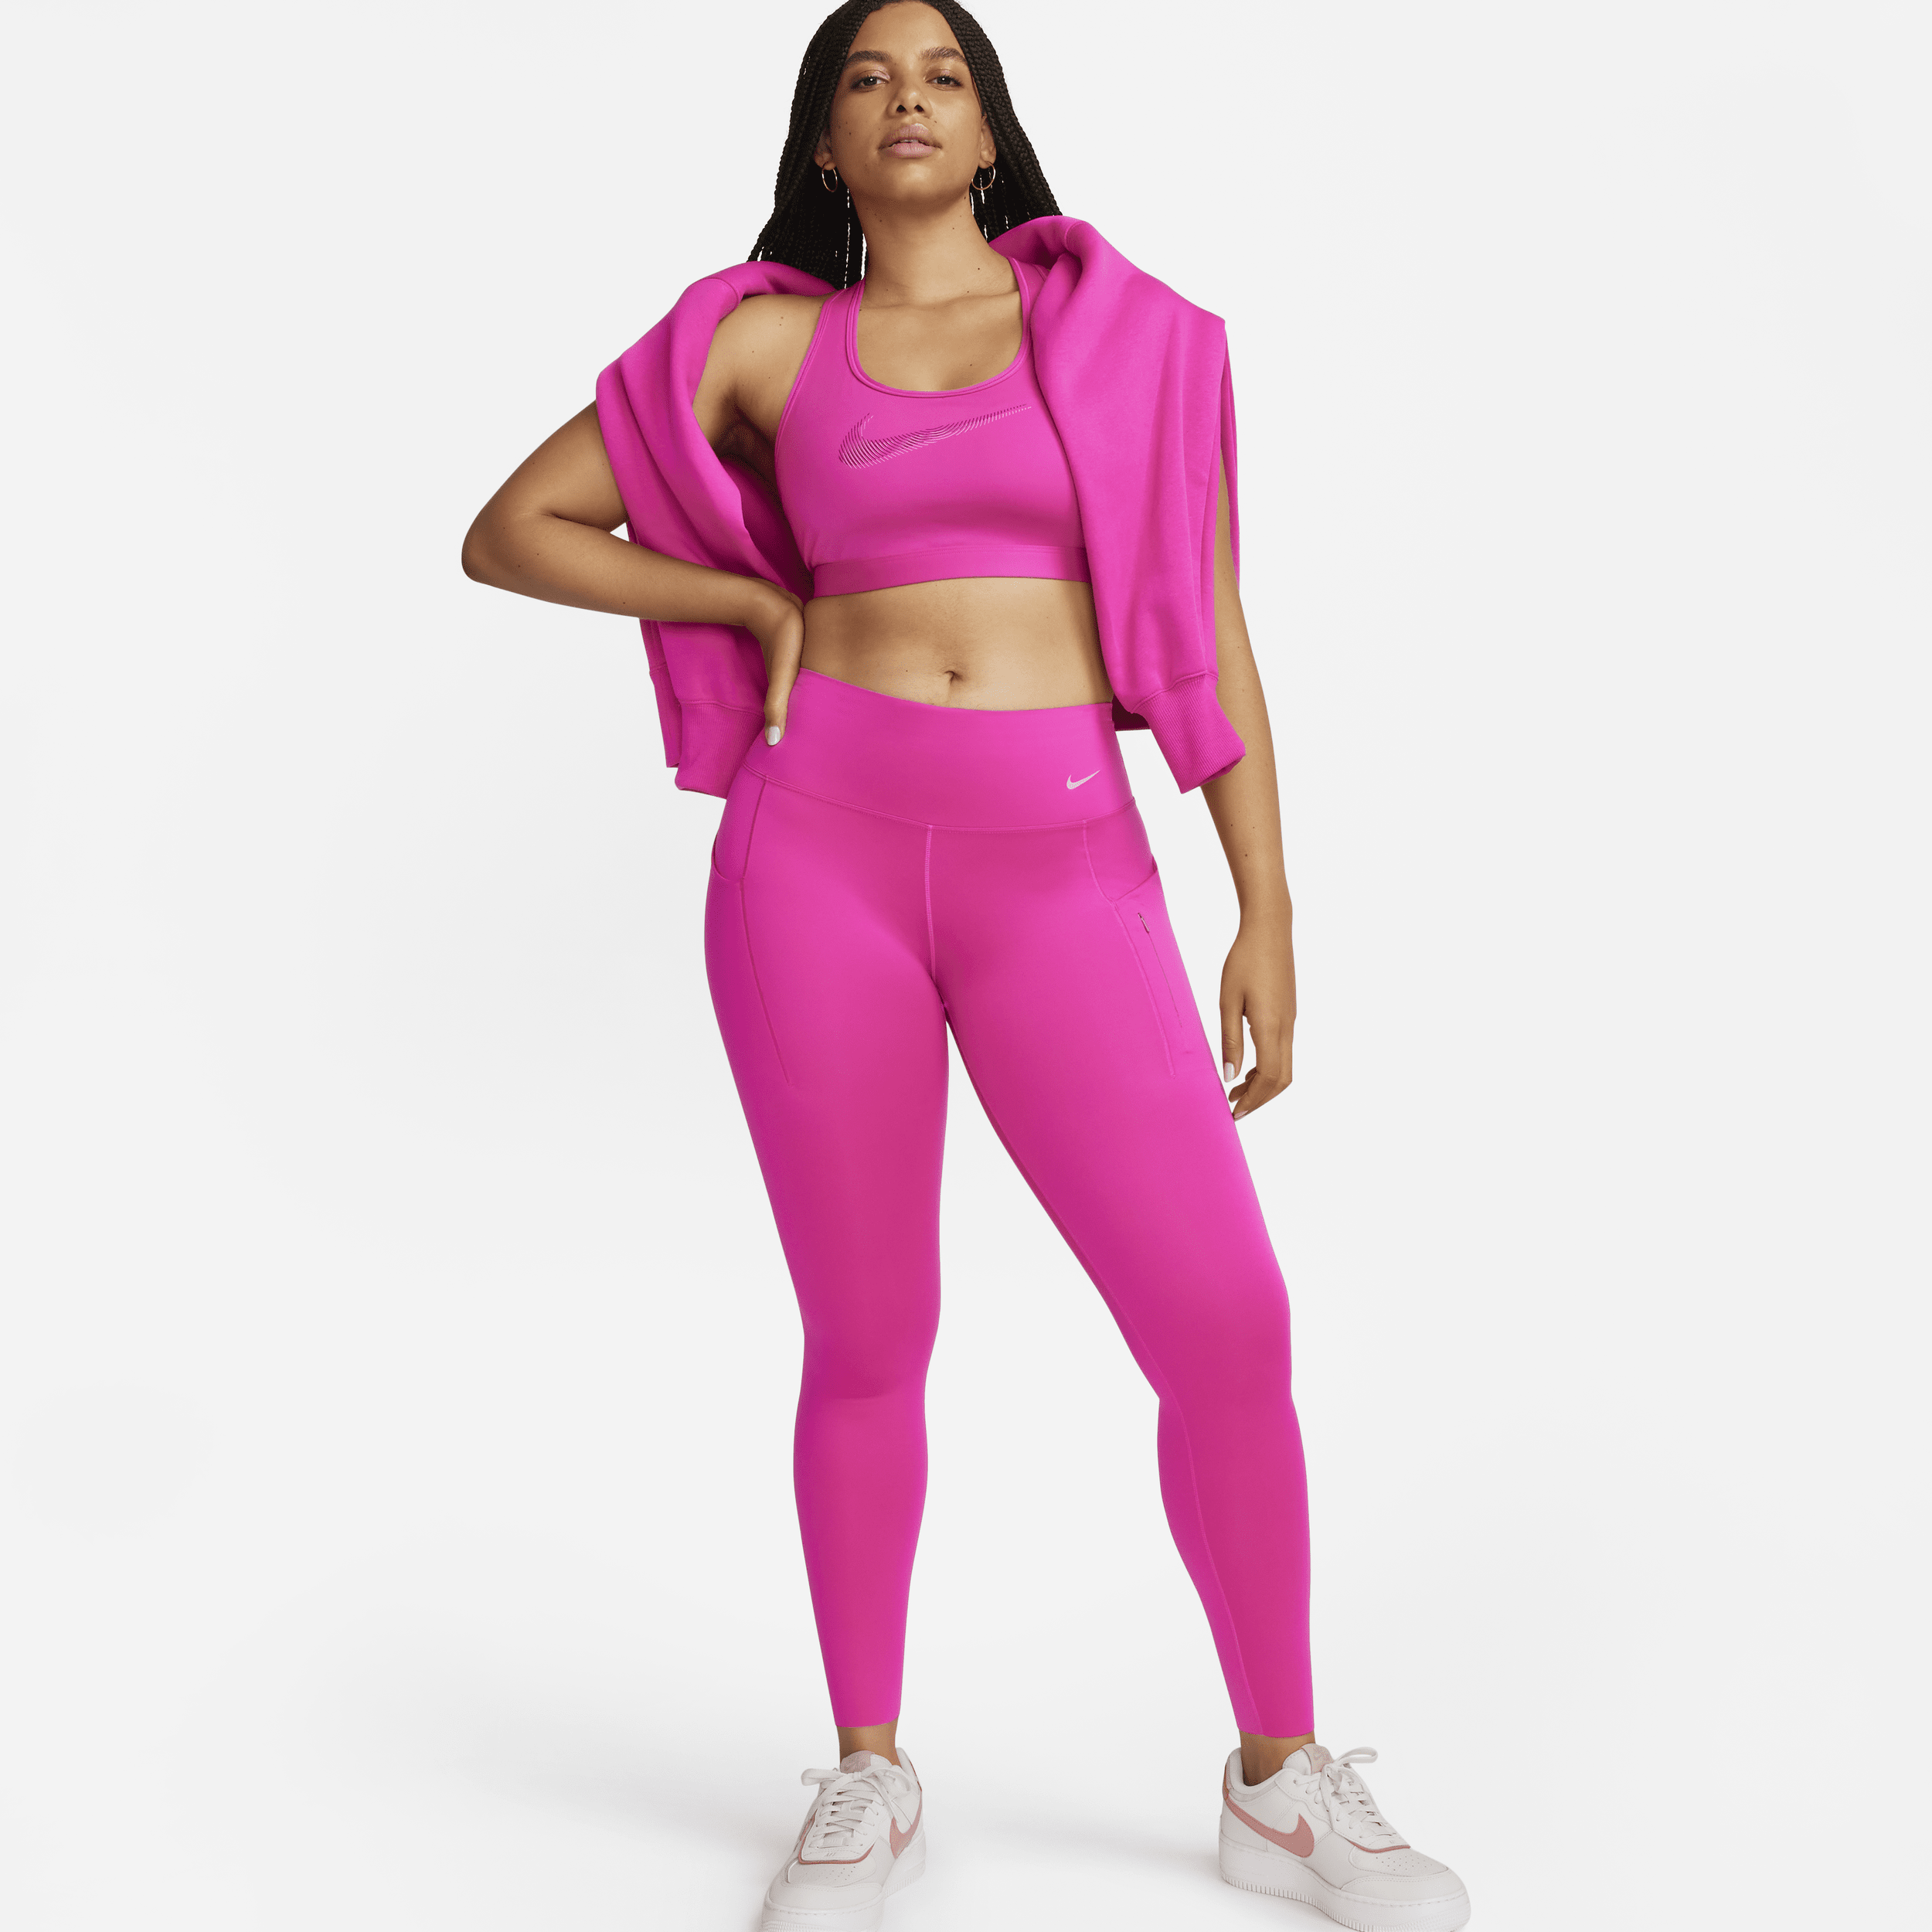 Lange Nike Go-leggings med højt støtteniveau, mellemhøj talje og lommer til kvinder - Pink